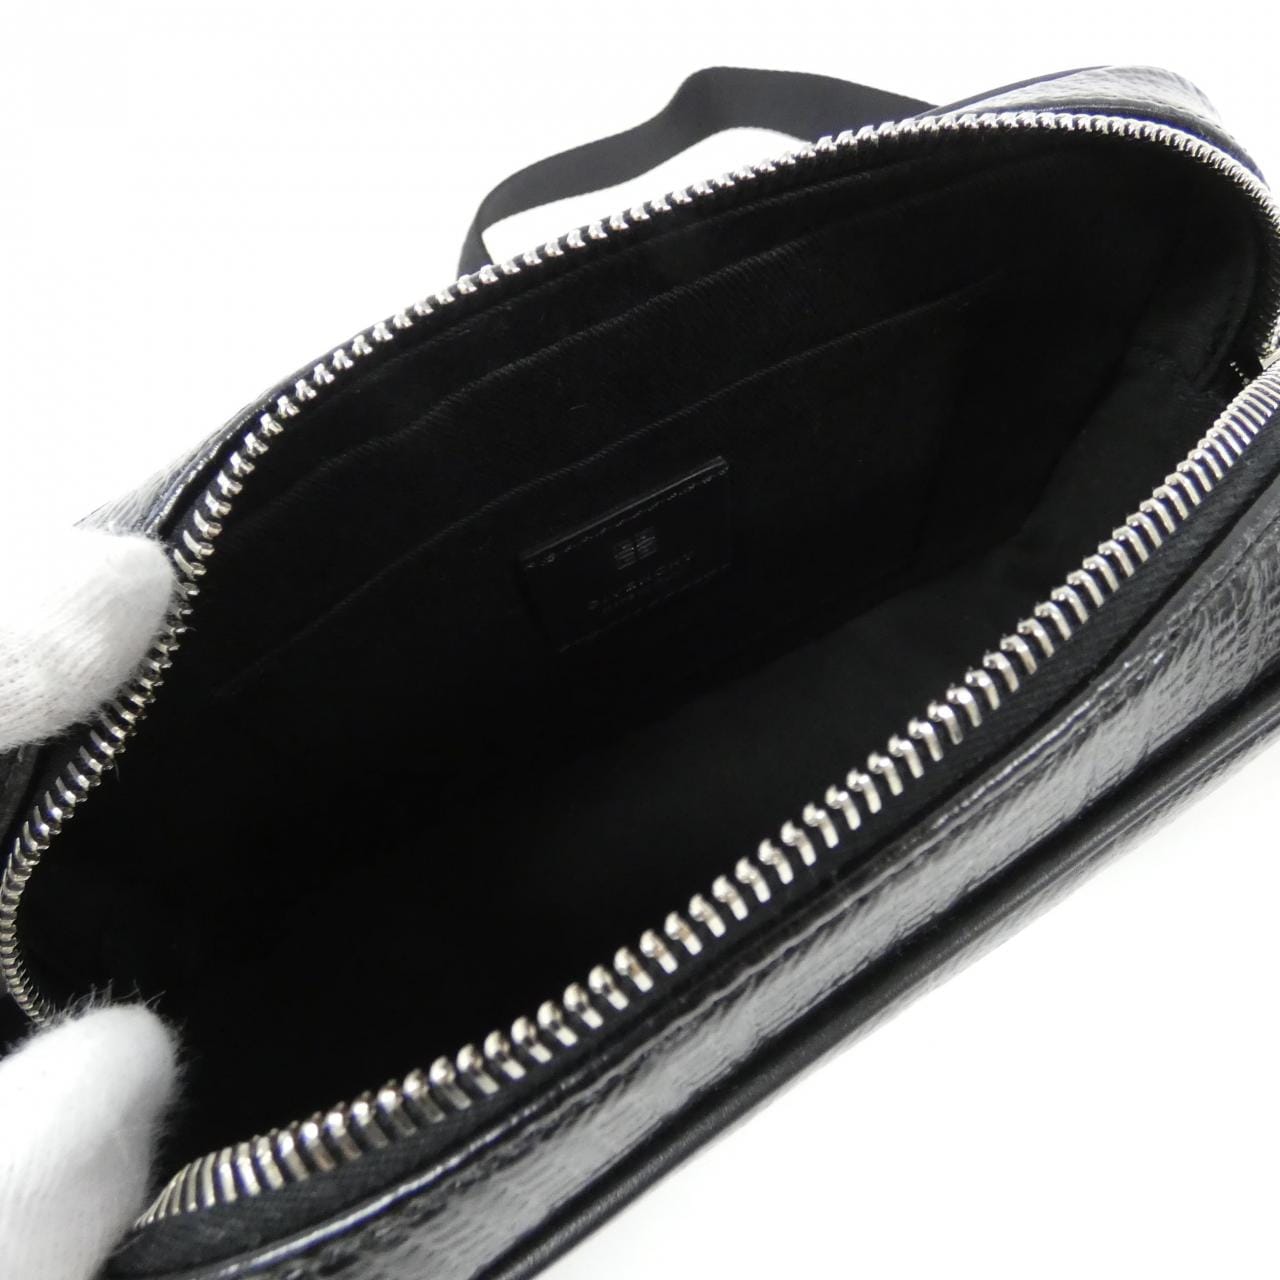 [BRAND NEW] GIVENCHY-Essentials Camera Bag BKU02XK1LF Shoulder Bag